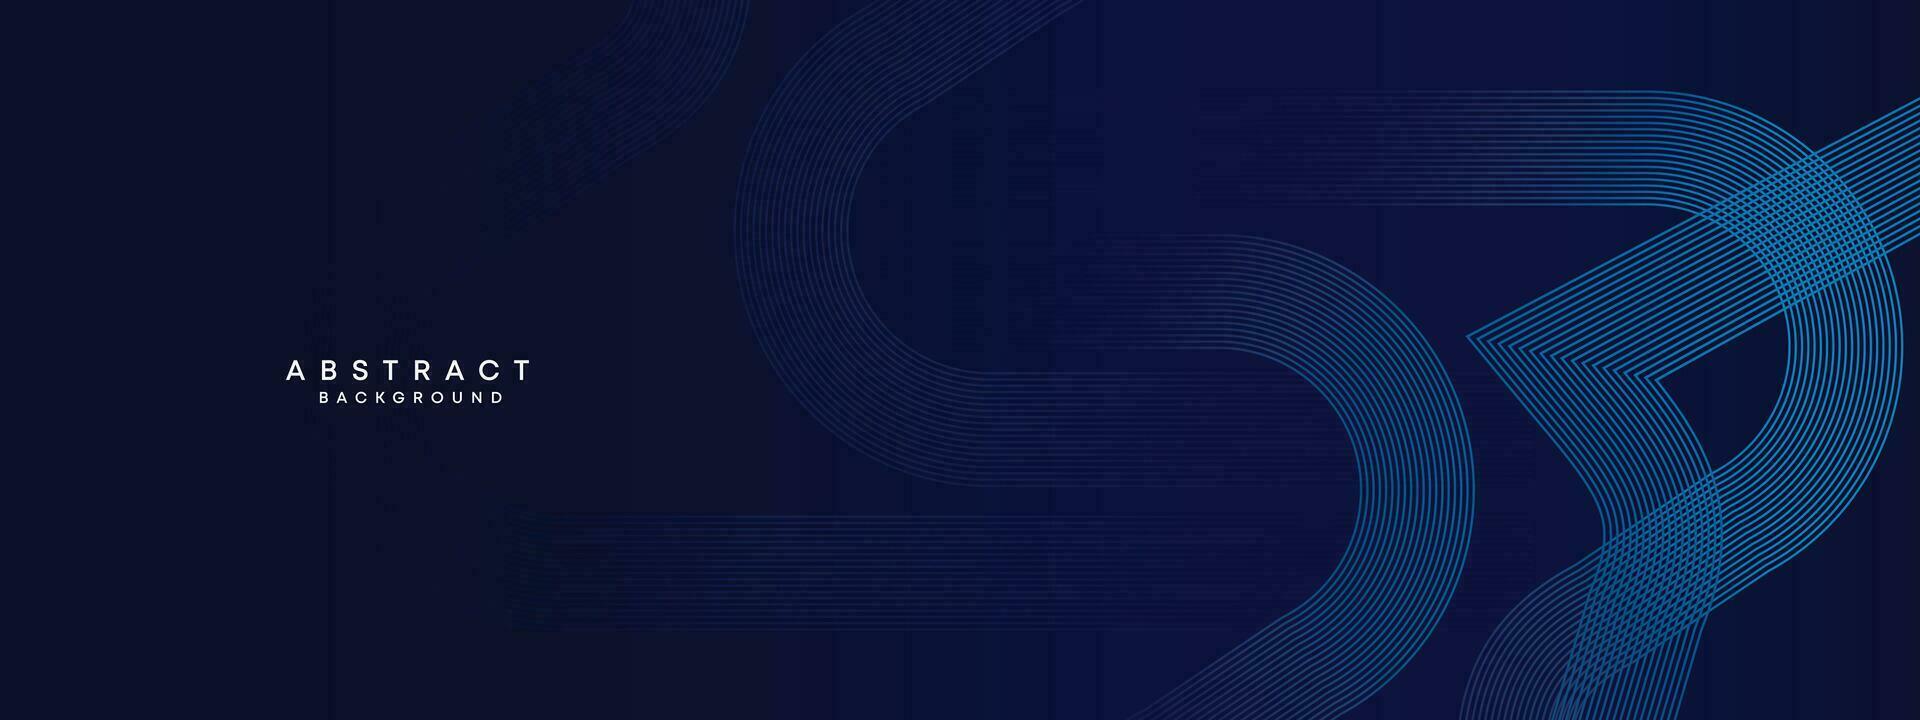 abstrakt dunkel Blau winken Kreise Linien Technologie Hintergrund. dunkel Blau Gradient mit glühend Linien glänzend geometrisch gestalten und Diagonale, zum Broschüre, Abdeckung, Poster, Banner, Webseite, Header vektor